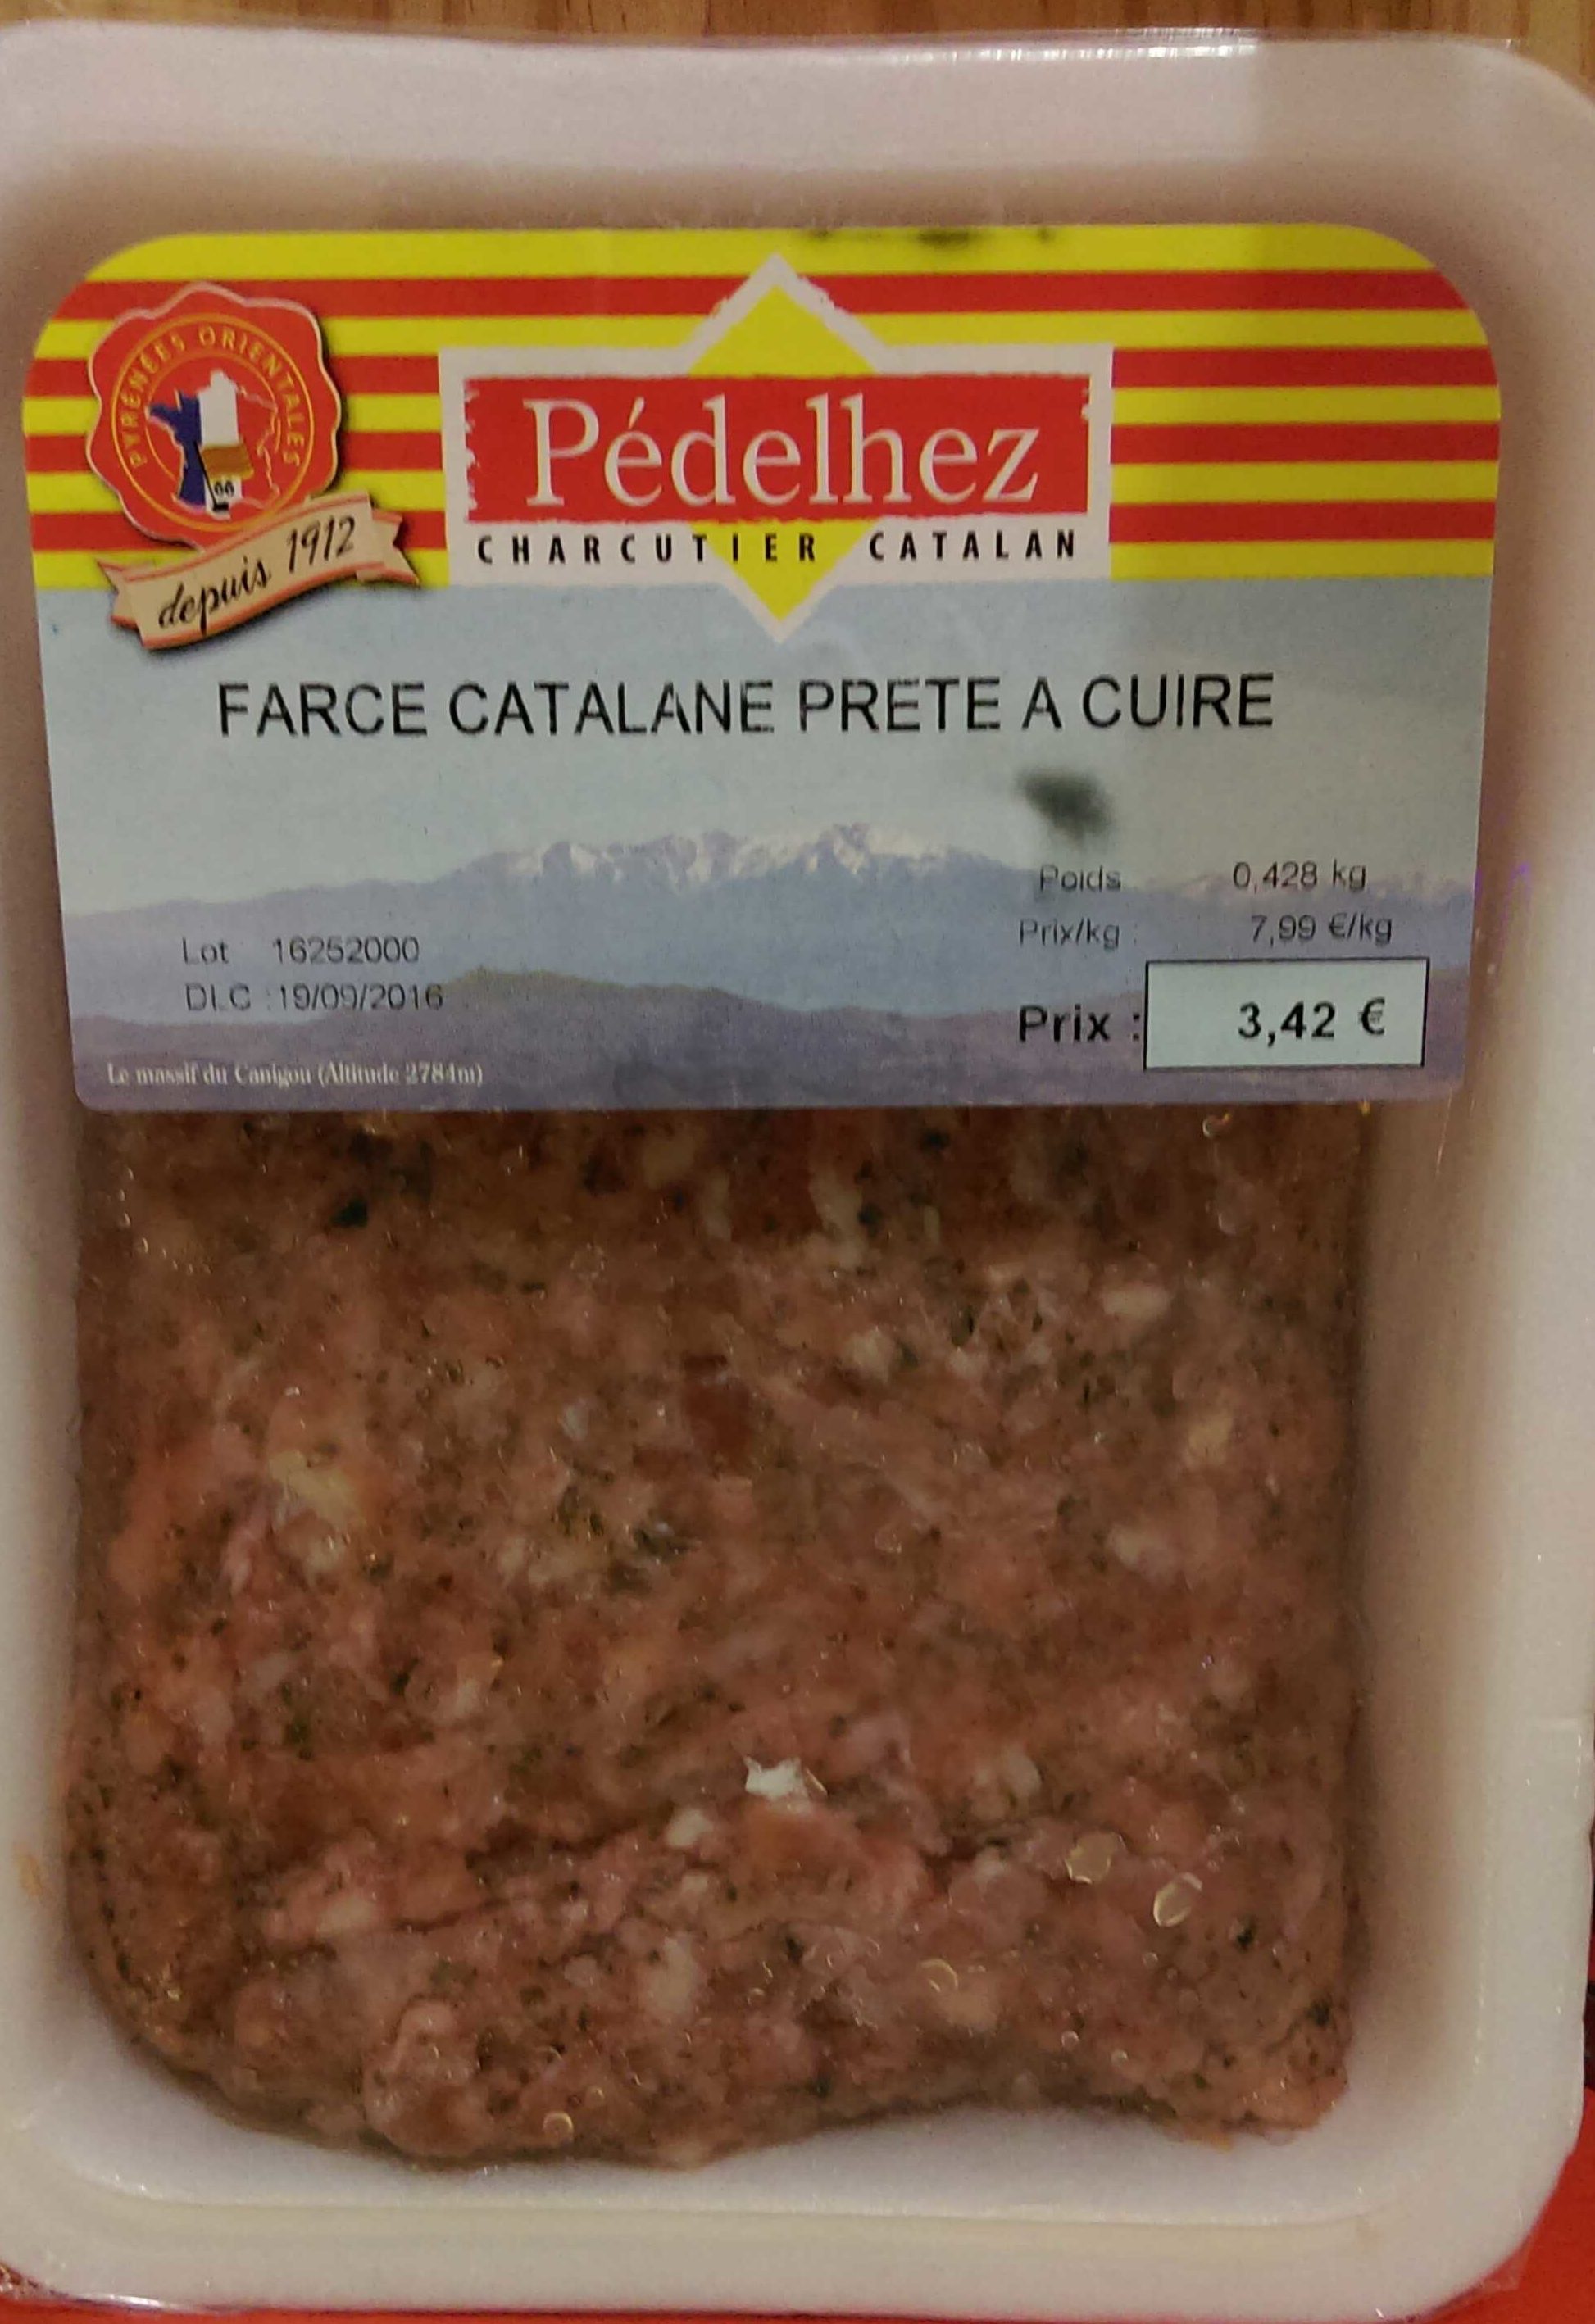 Farce catalane prête à cuire - Product - fr